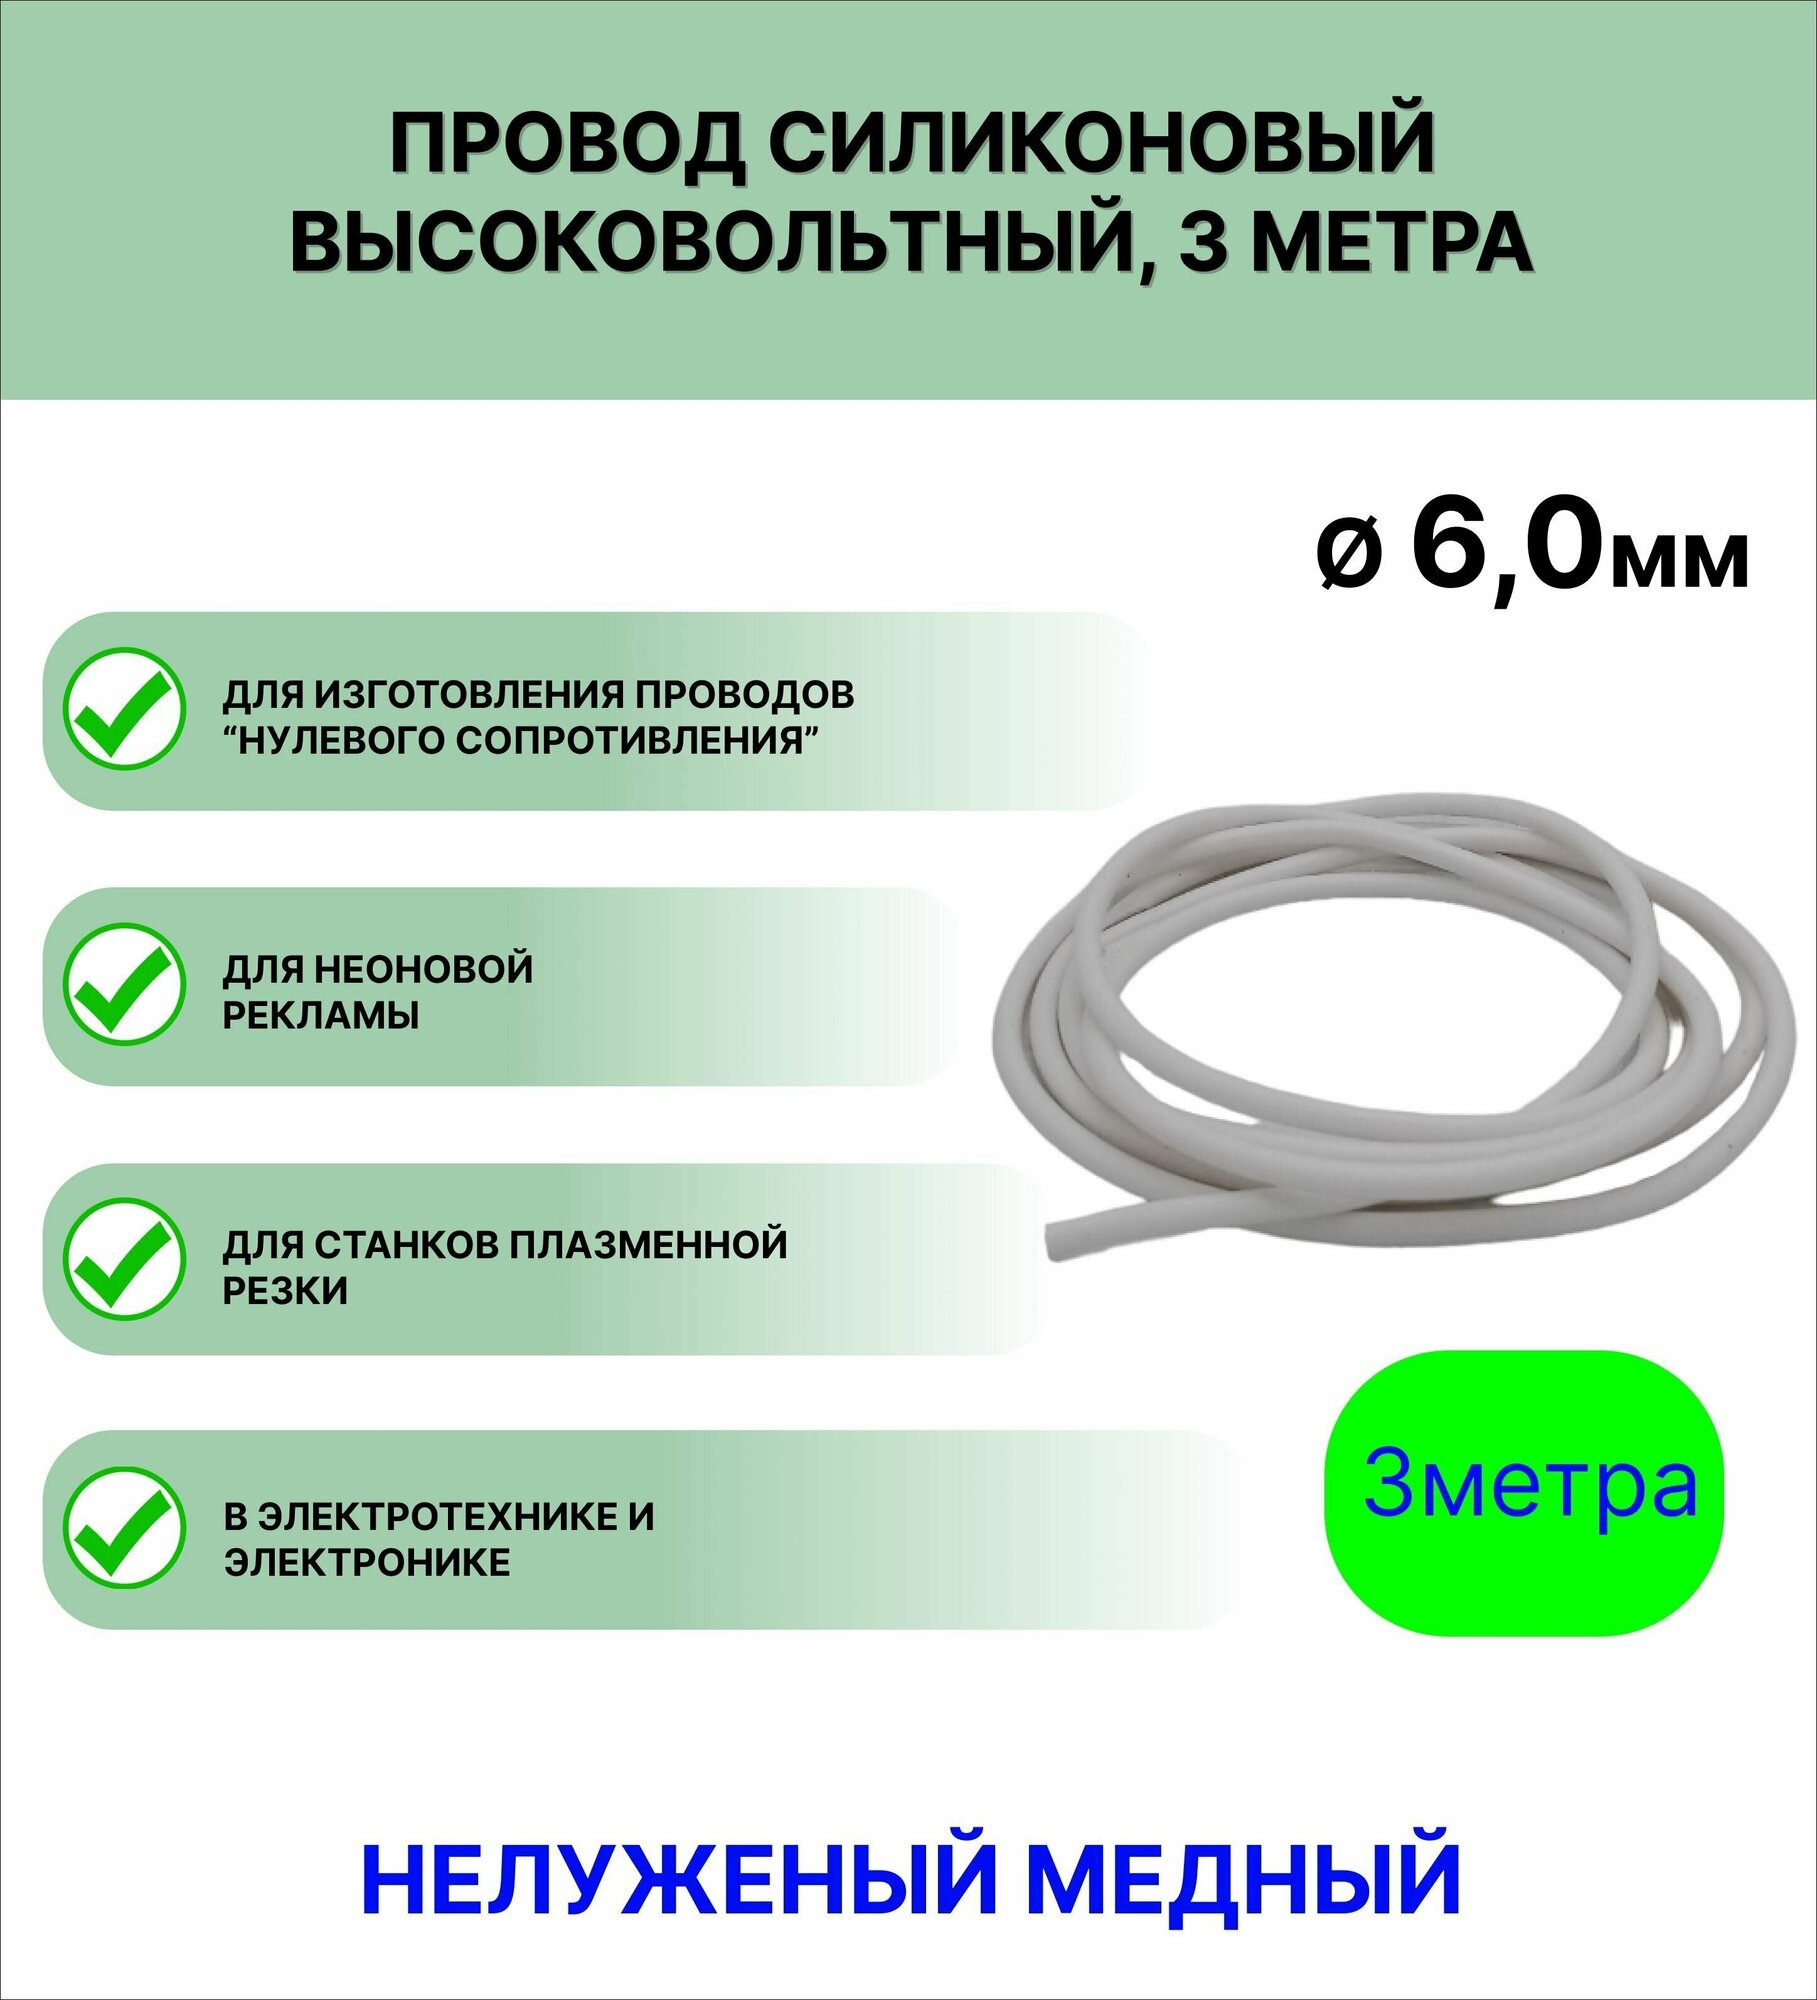 Провод силиконовый высоковольтный пркв 1.0 (6,0 мм) белый, 3 метра